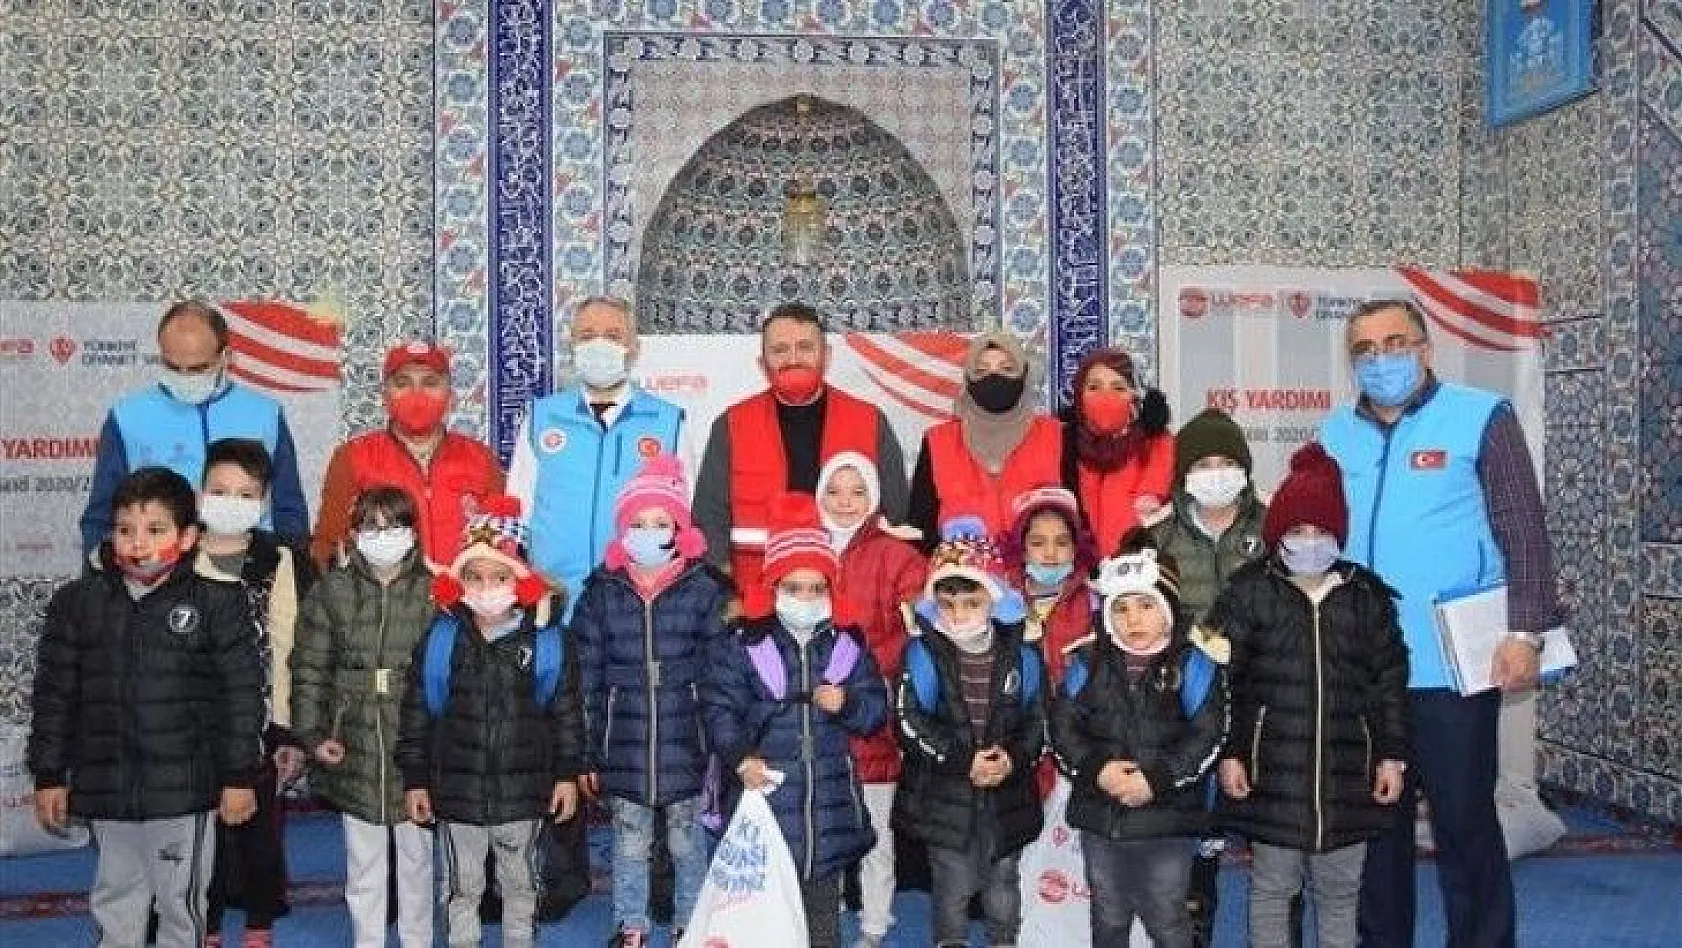 WEFA Uluslararası İnsani Yardım Organizasyonu'ndan çocuklara kışlık kıyafet yardımı